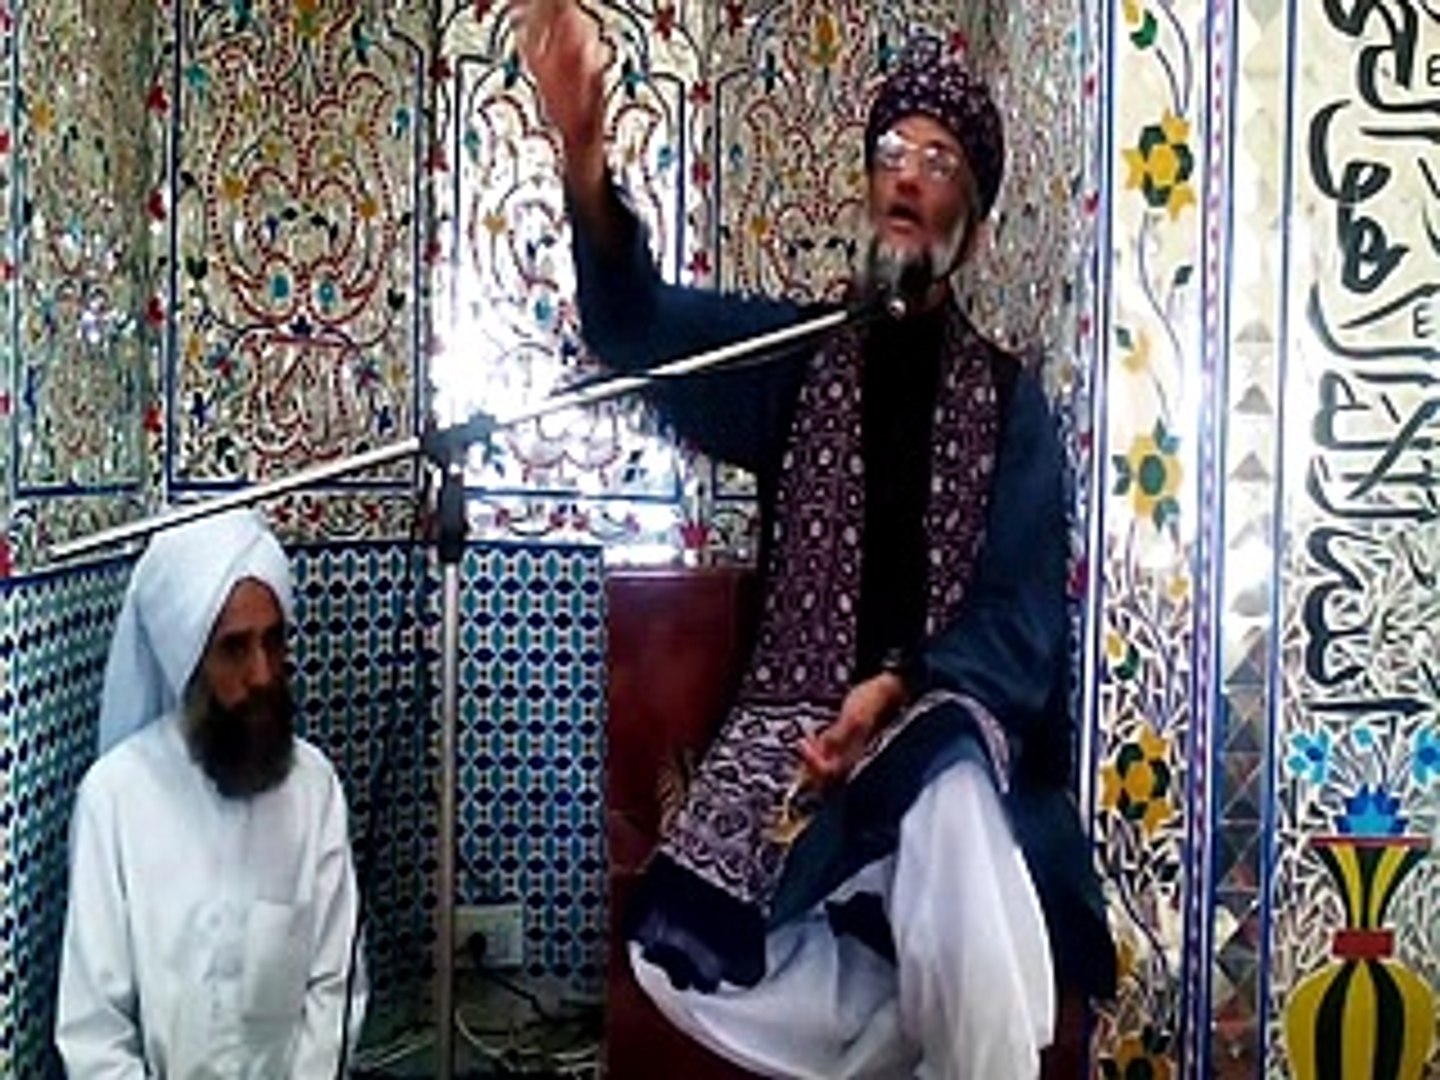 Ilm e Hazrat Abu Bakar Siddique by Sahibzada Abulkhair Zubair